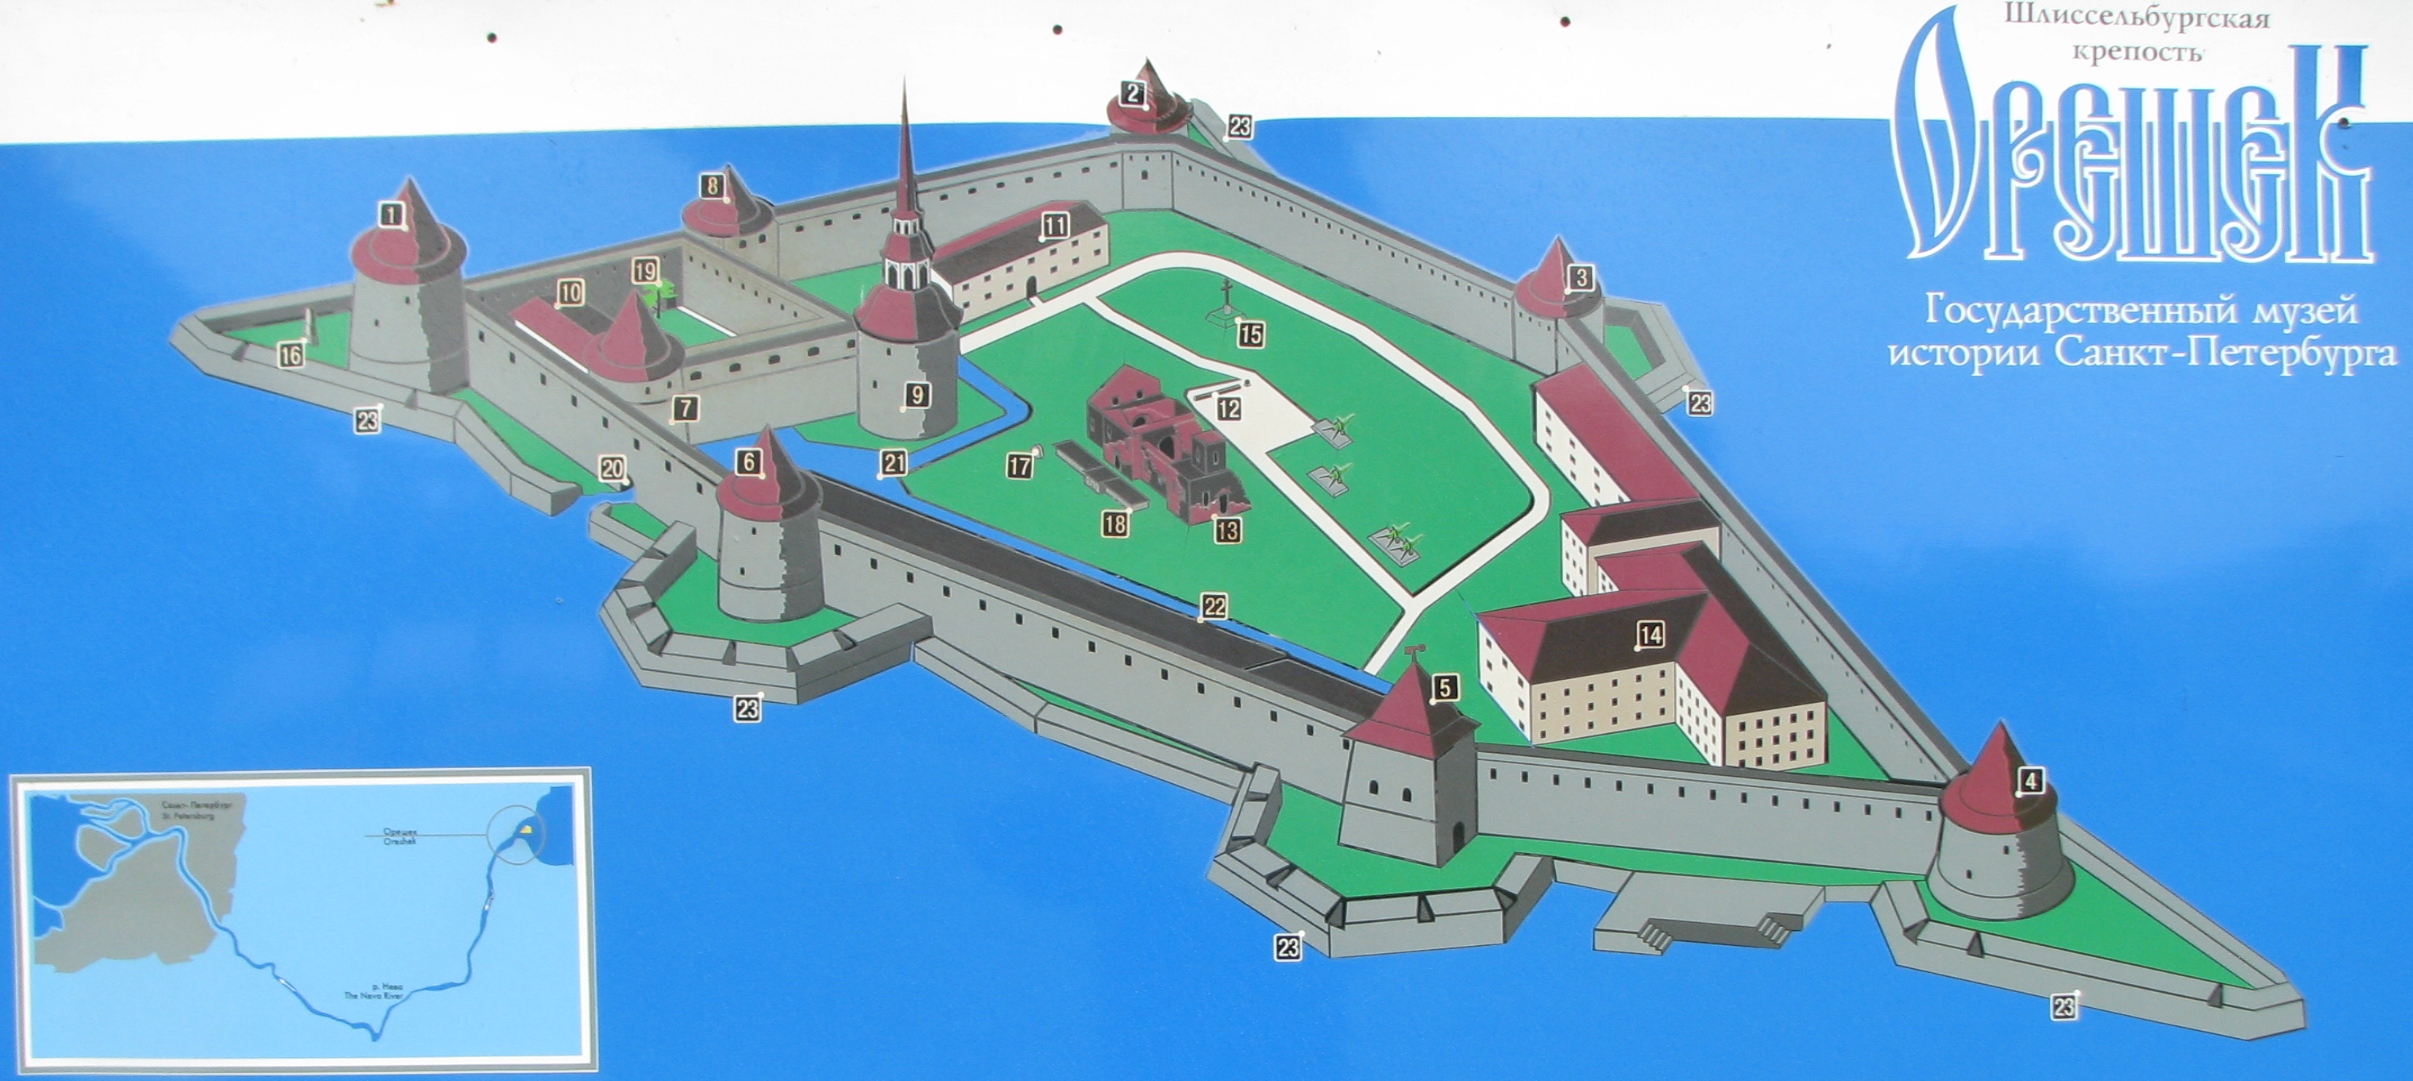 Шлиссельбургская крепость орешек план